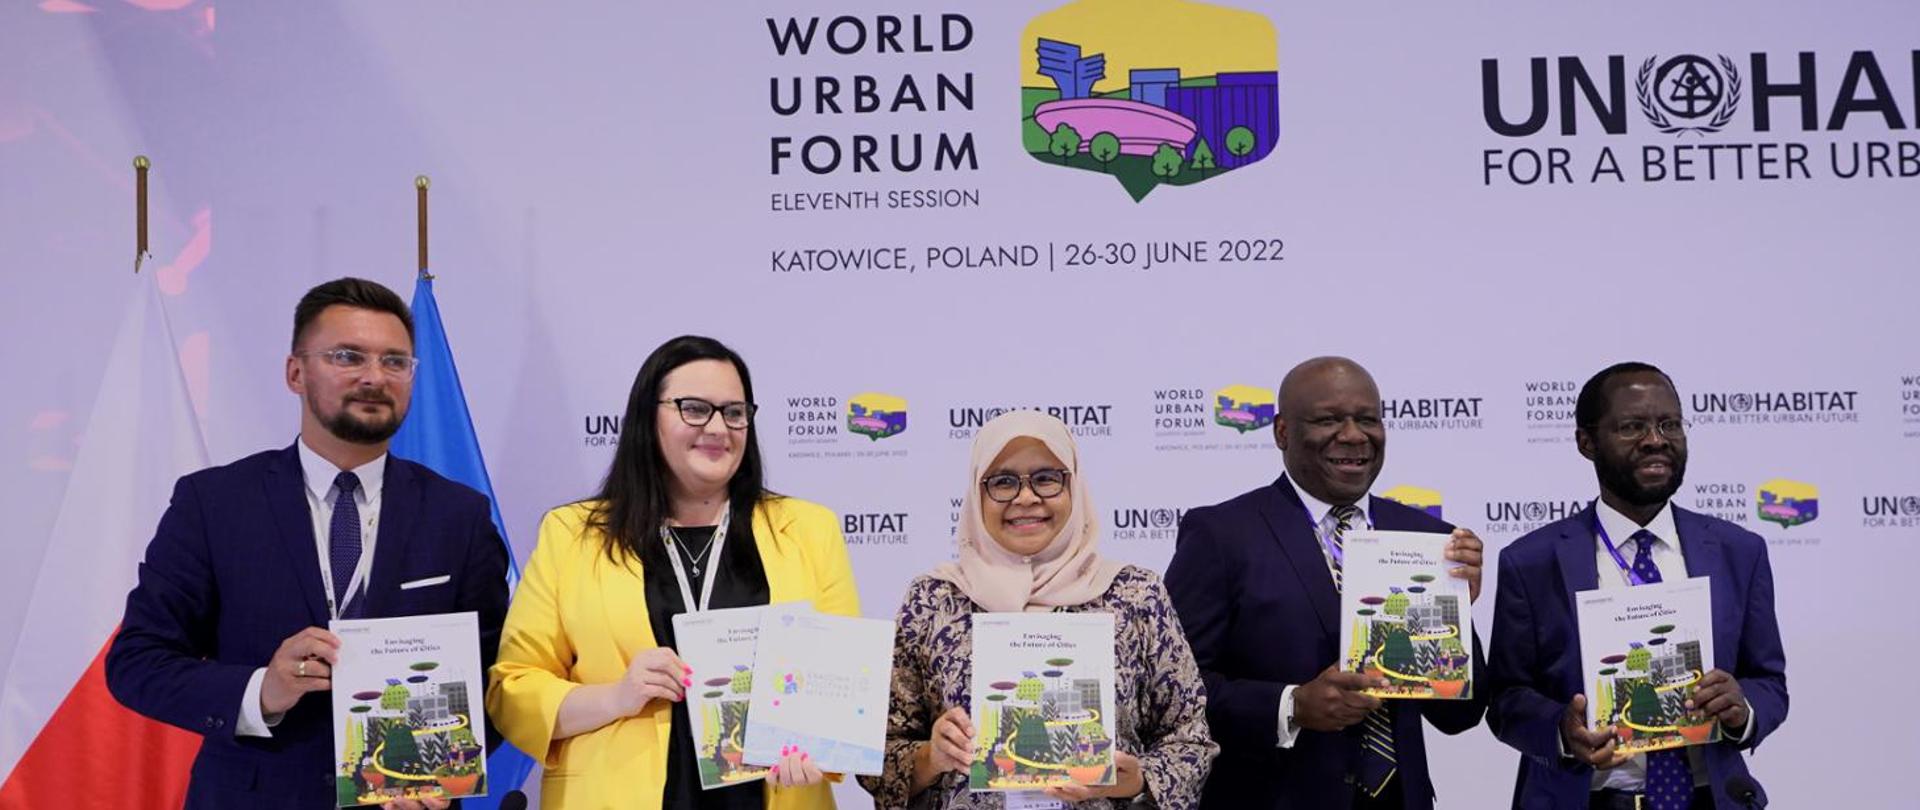 (od lewej): prezydent miasta Katowice Marcin Krupa, wiceminister funduszy i polityki regionalnej Małgorzata Jarosińska-Jedynak, dyrektor wykonawcza UN-Habitat Maimunah Mohd Sharif, oraz dwóch uczestników spotkania